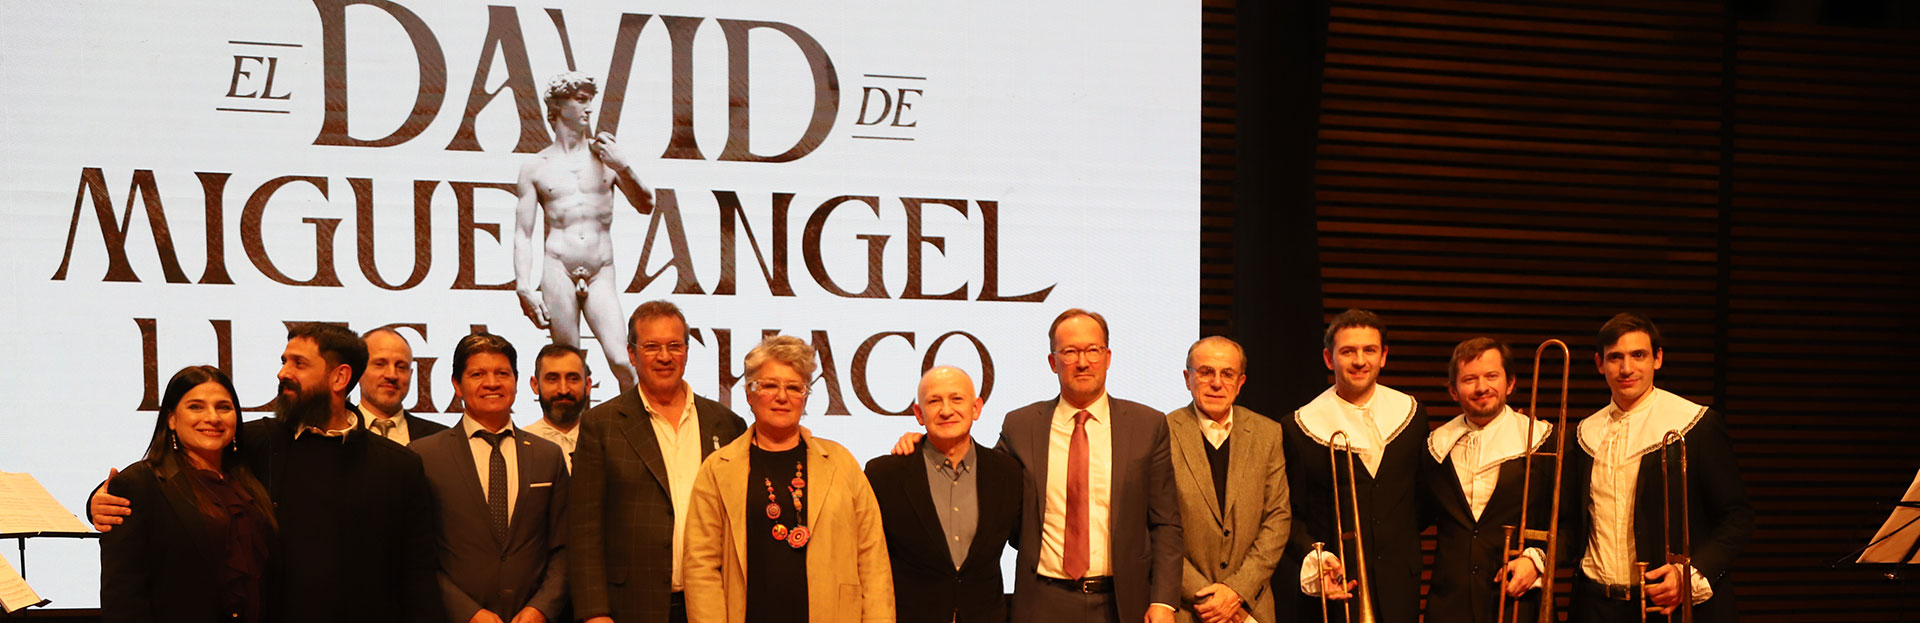 Se presentó el proyecto “El David de Miguel Ángel en Chaco” 